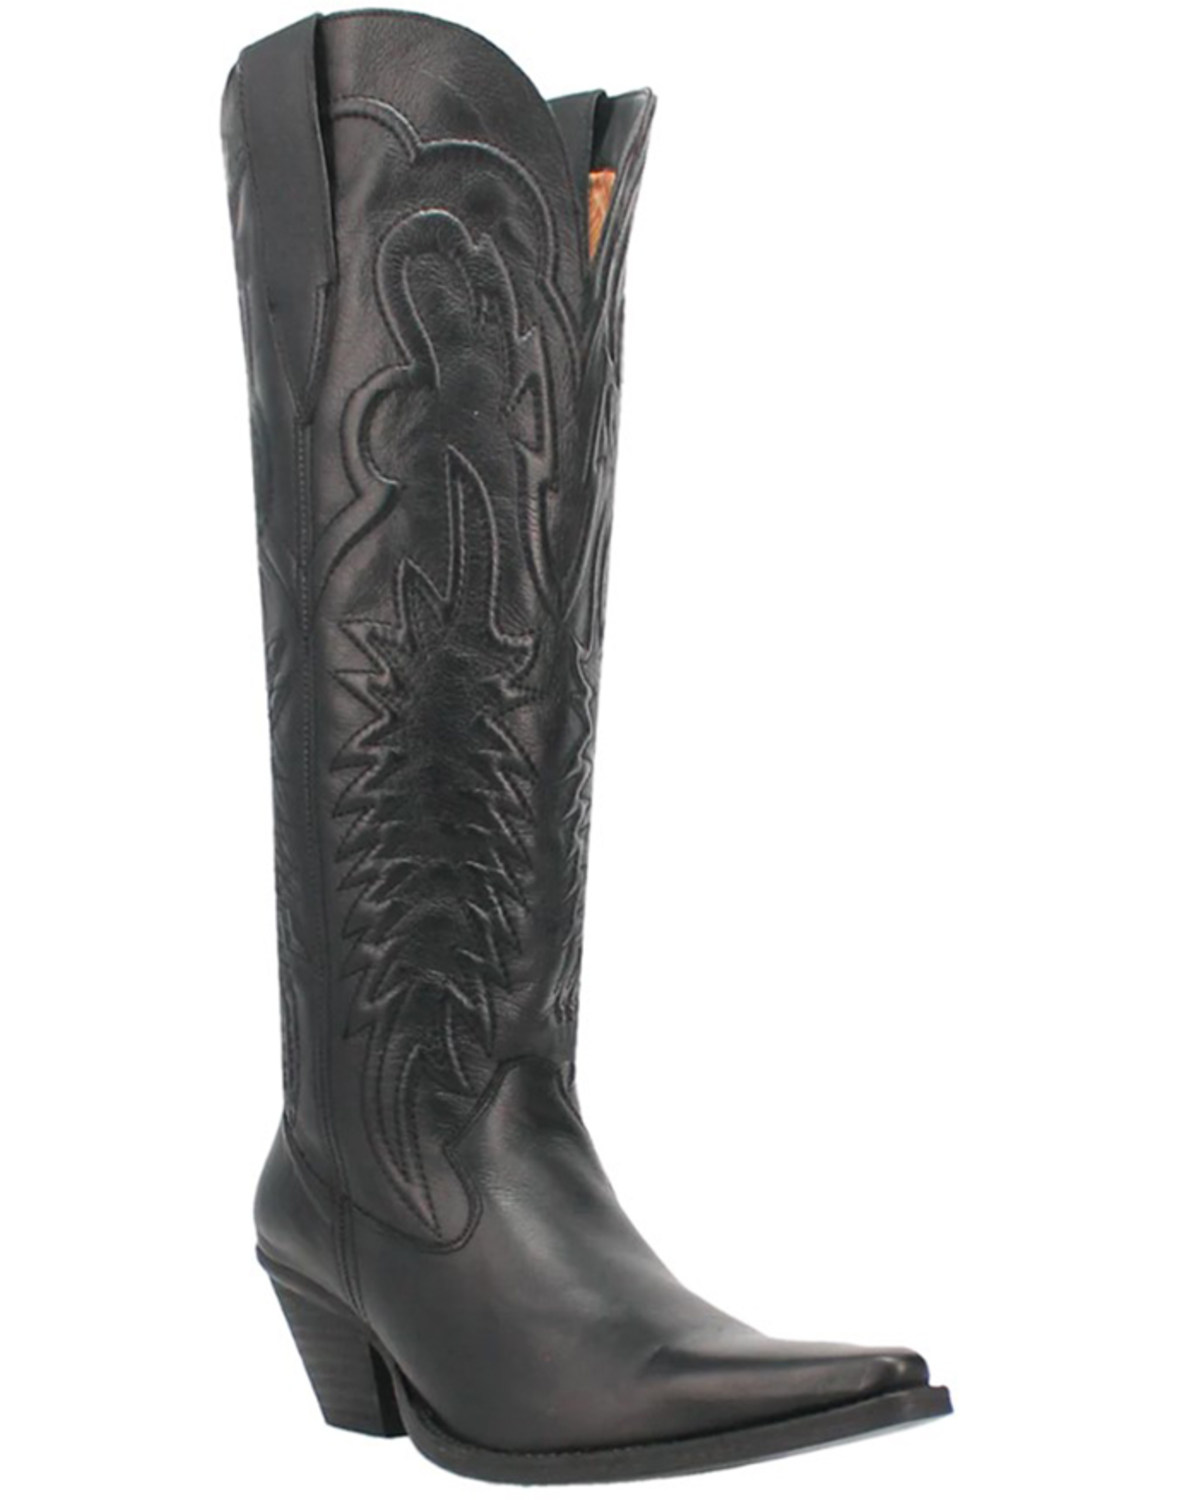 Dingo Women's Raisin Kane Tall Western Boots